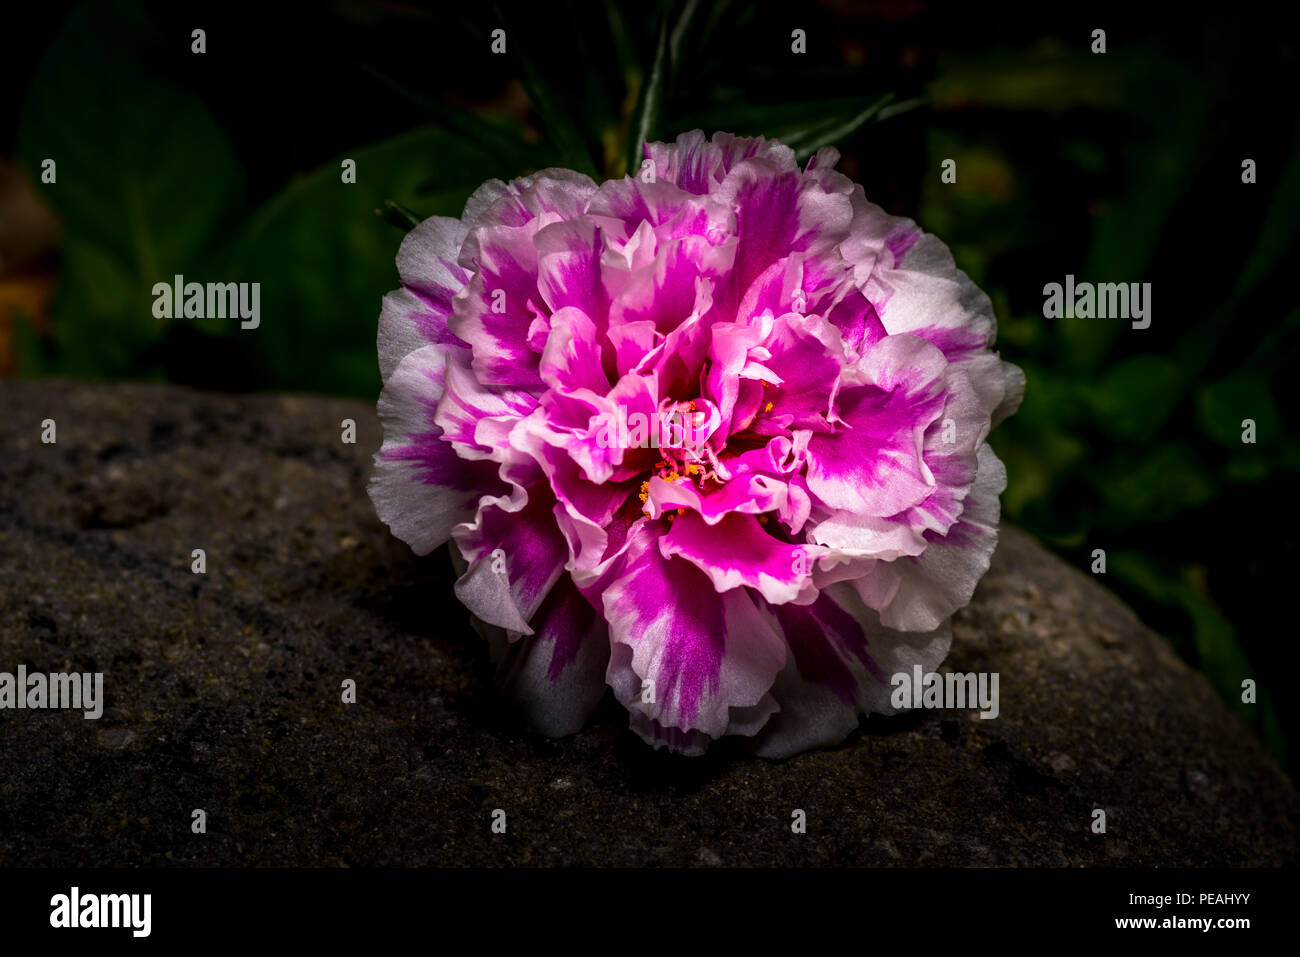 Rosa e Bianco di chiodi di garofano fiore nelke davanti a uno sfondo scuro Foto Stock